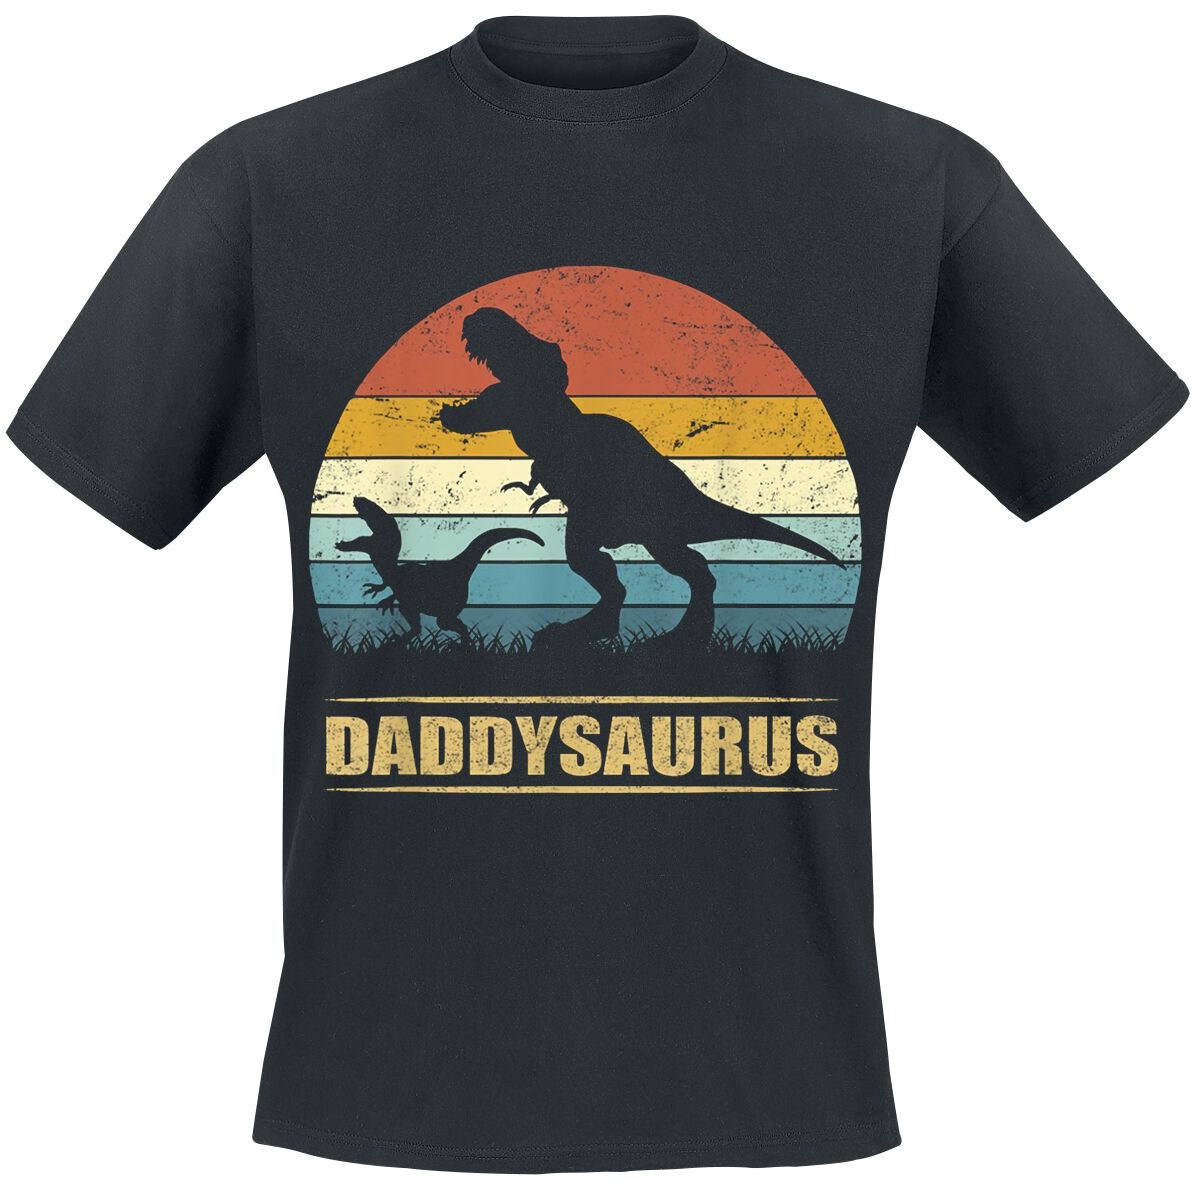 Familie & Freunde T-Shirt - Daddysaurus 3 - S bis 4XL - für Männer - Größe XXL - schwarz